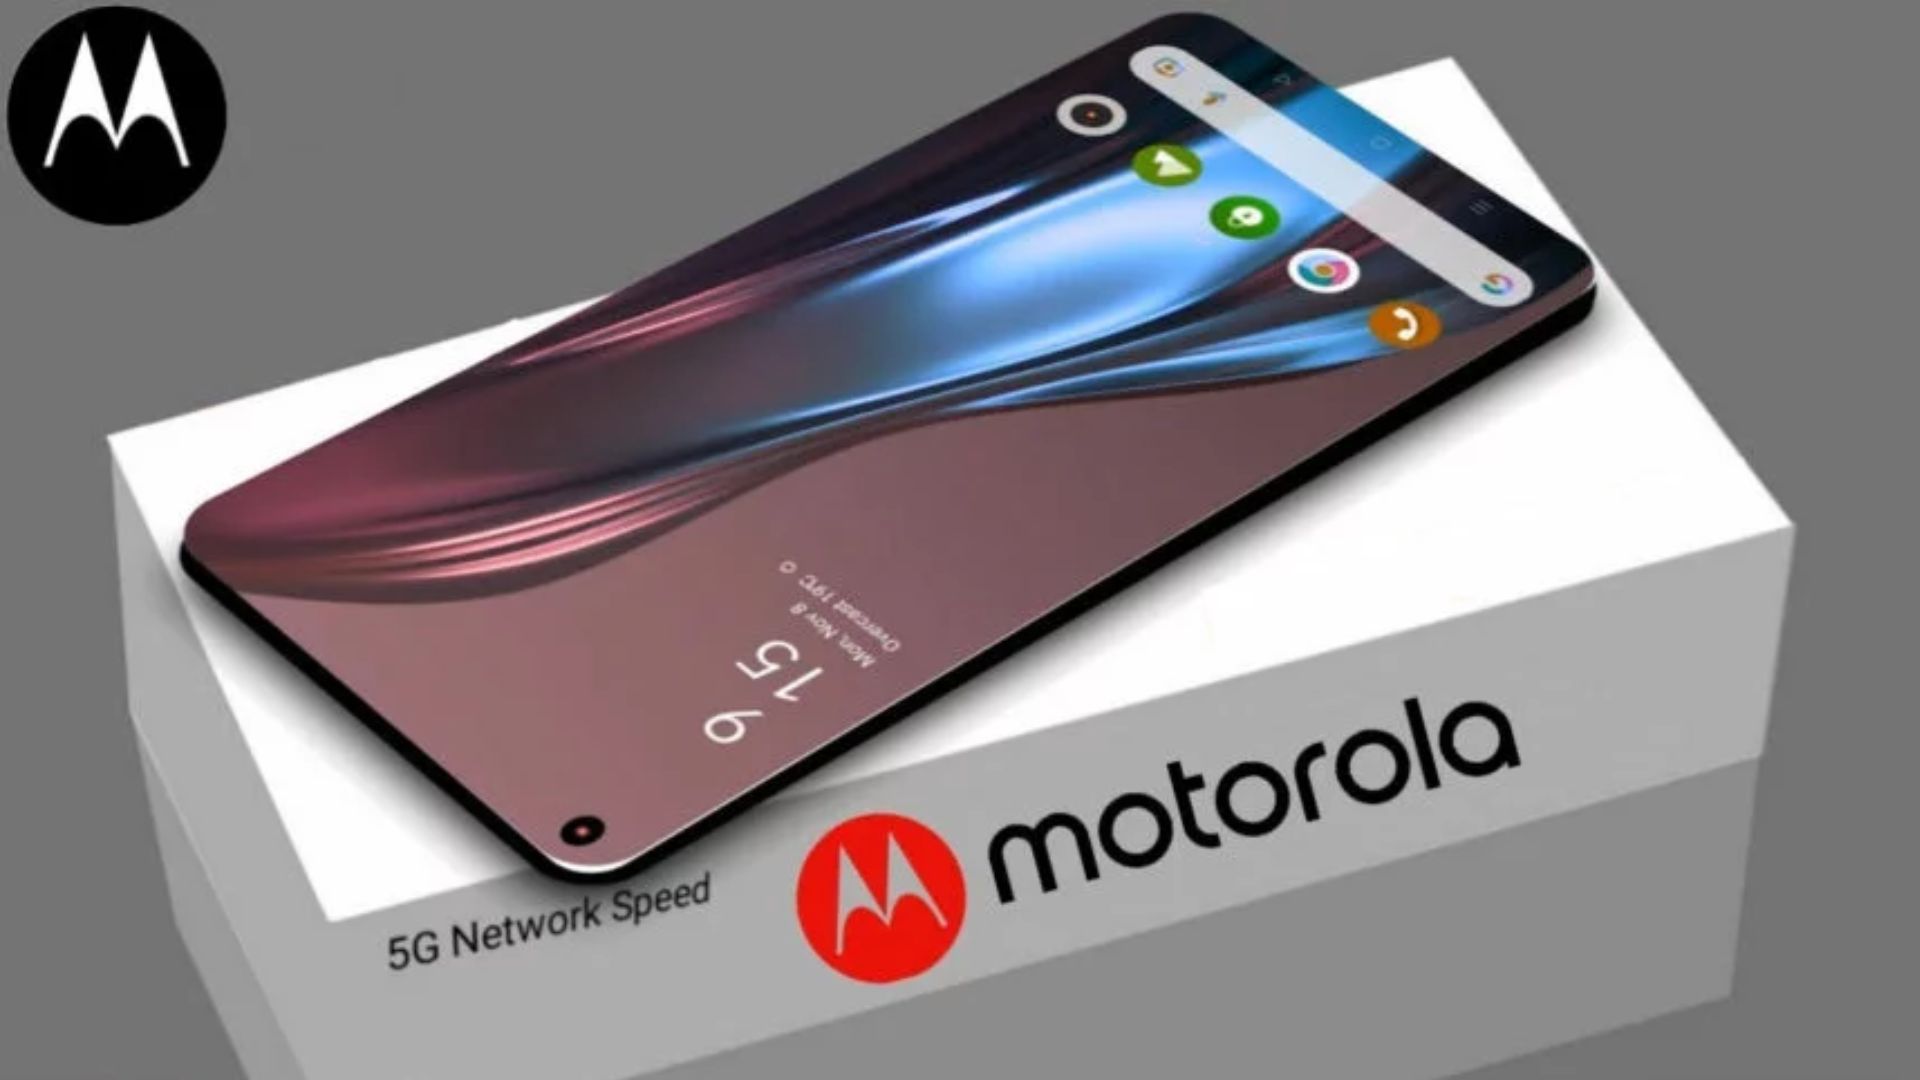  मोटोरोला ने लॉन्च किया सबसे पतला स्मार्टफोन एज 40, जानें कीमत और फीचर्स 